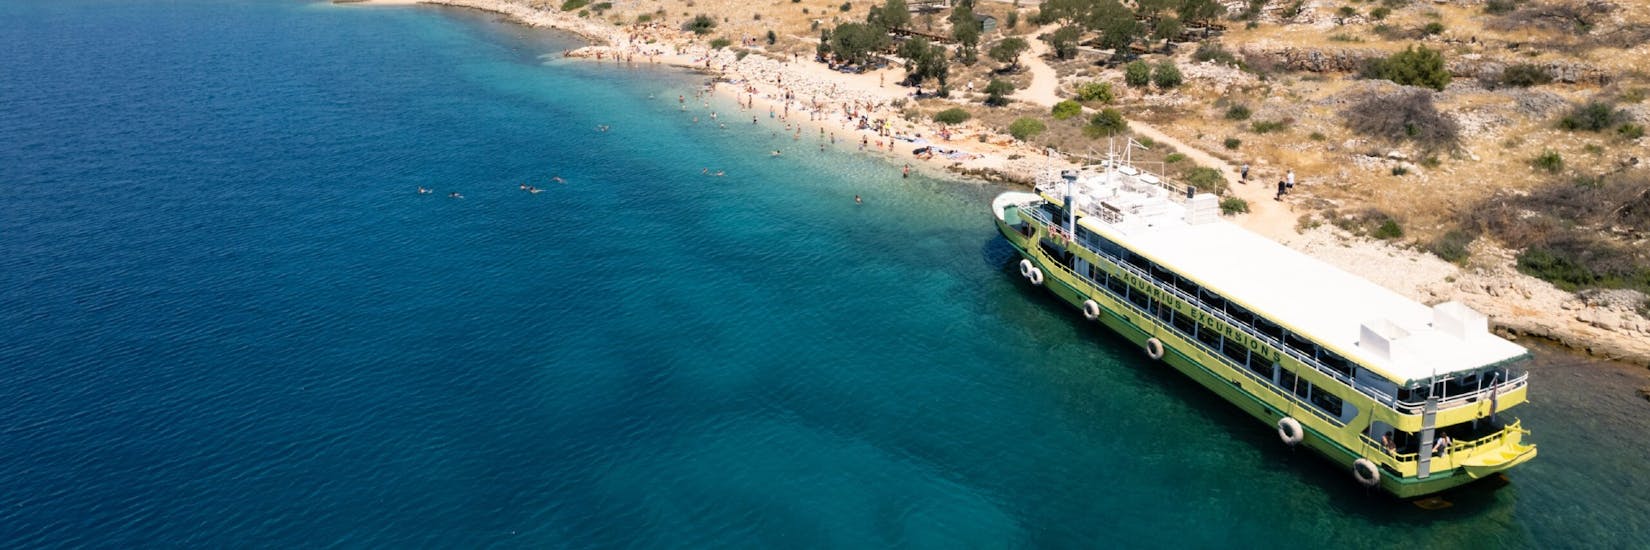 Vue sur le bateau lors de la Balade en bateau au parc national de Kornati avec Escale à Lavdara & Ugljan avec Aquarius Excursions Zadar.